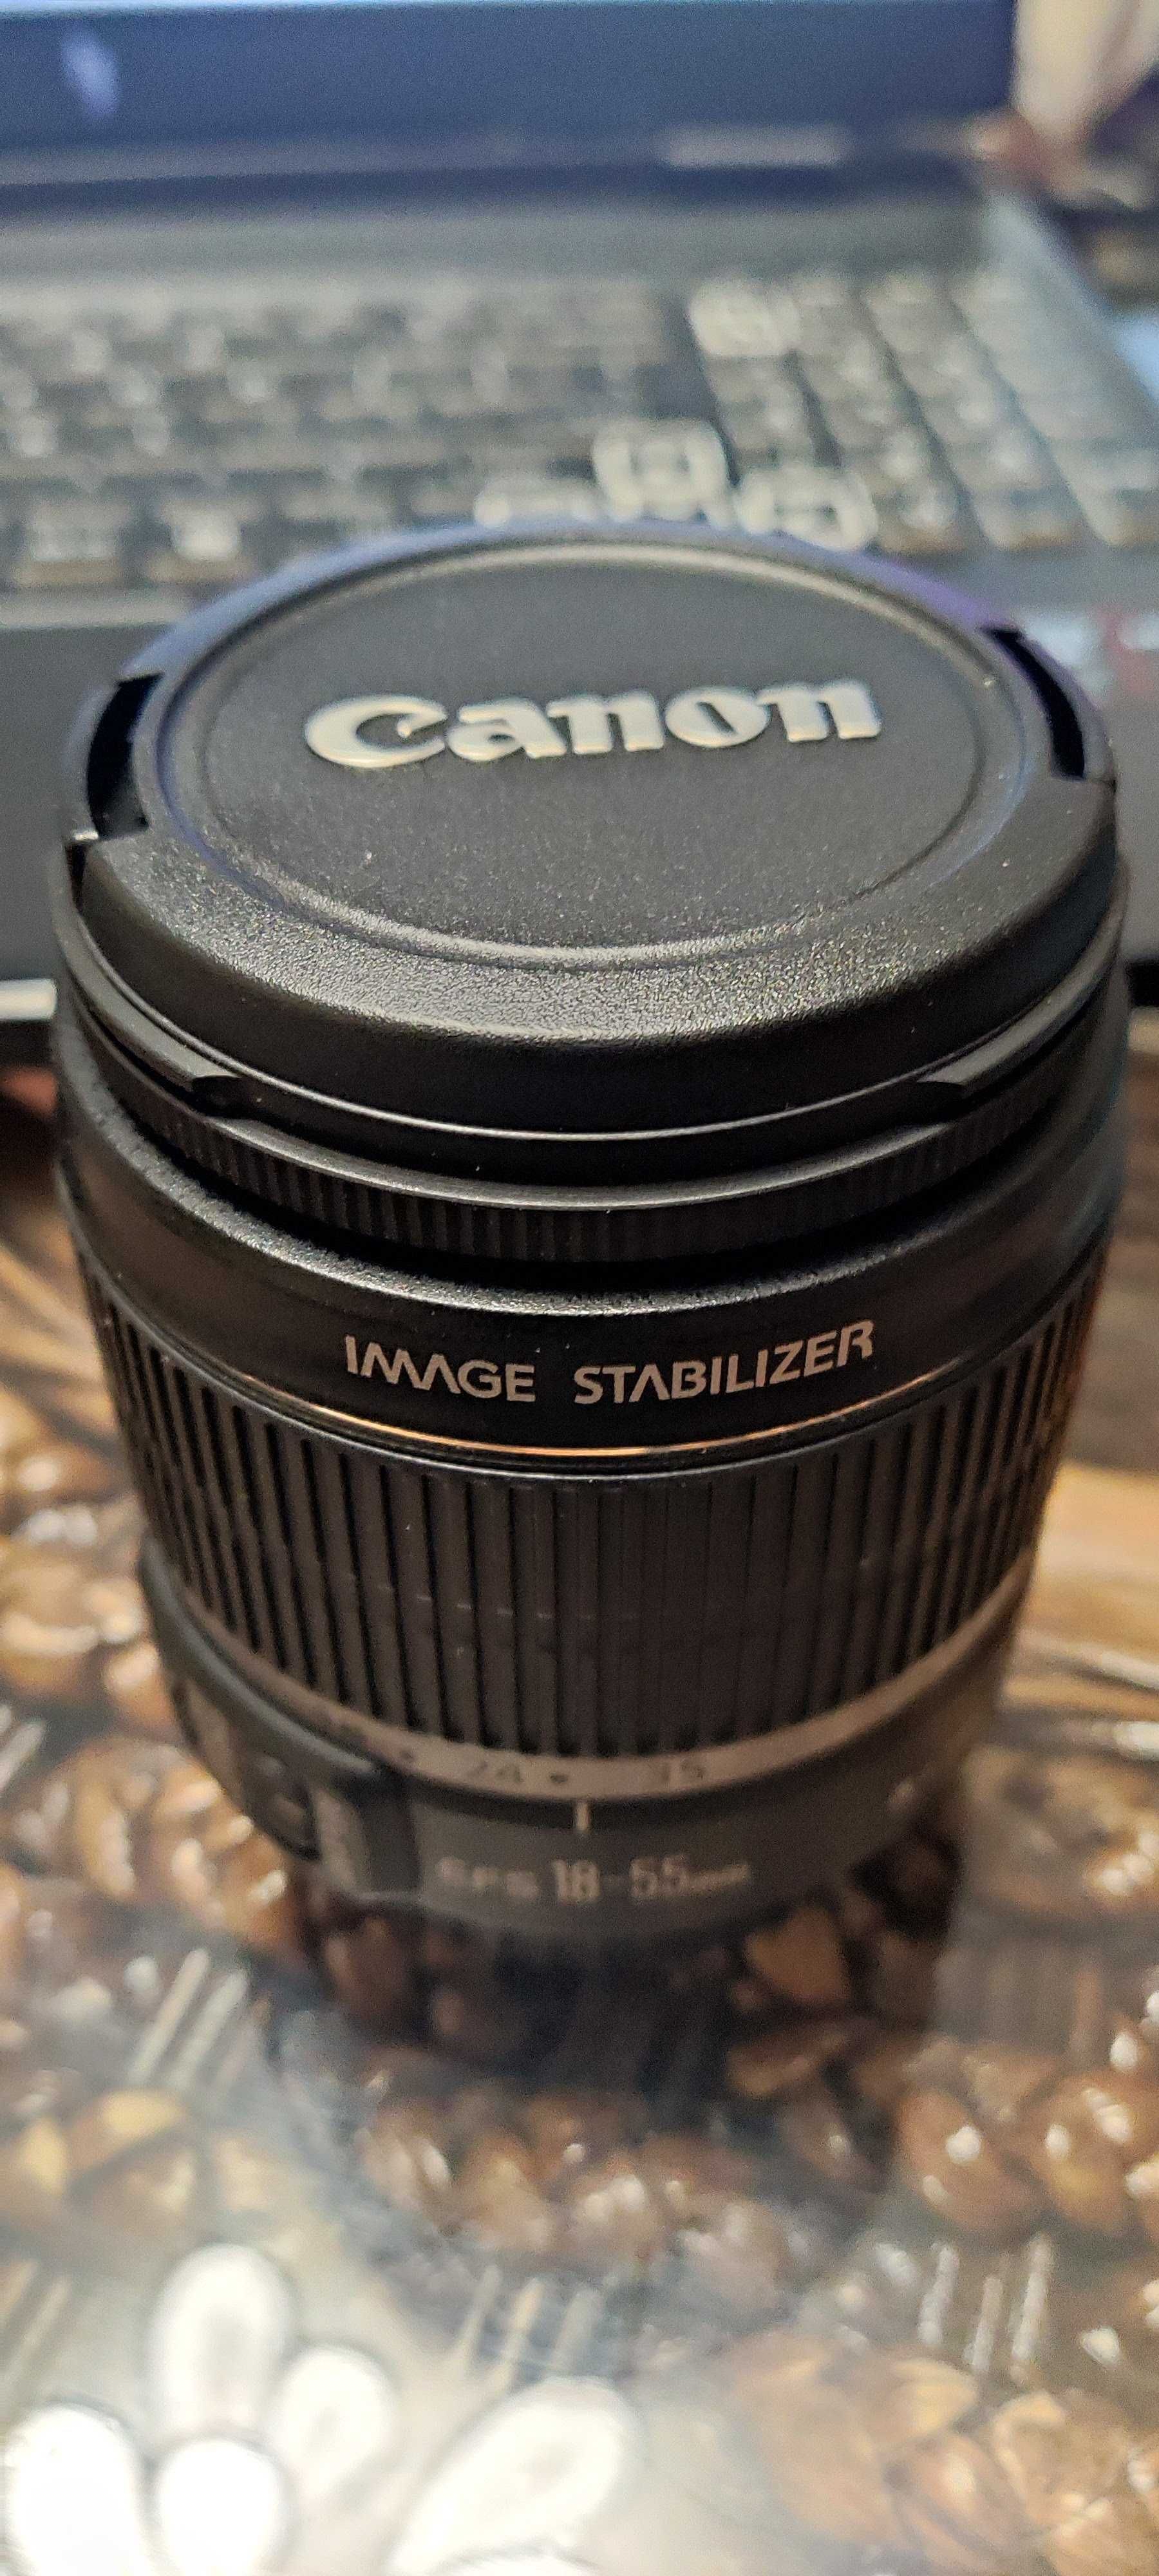 Nowy obiektyw OEM Canon E-FS 18-55 MM F3.5-5.6 AF/STABILIZER